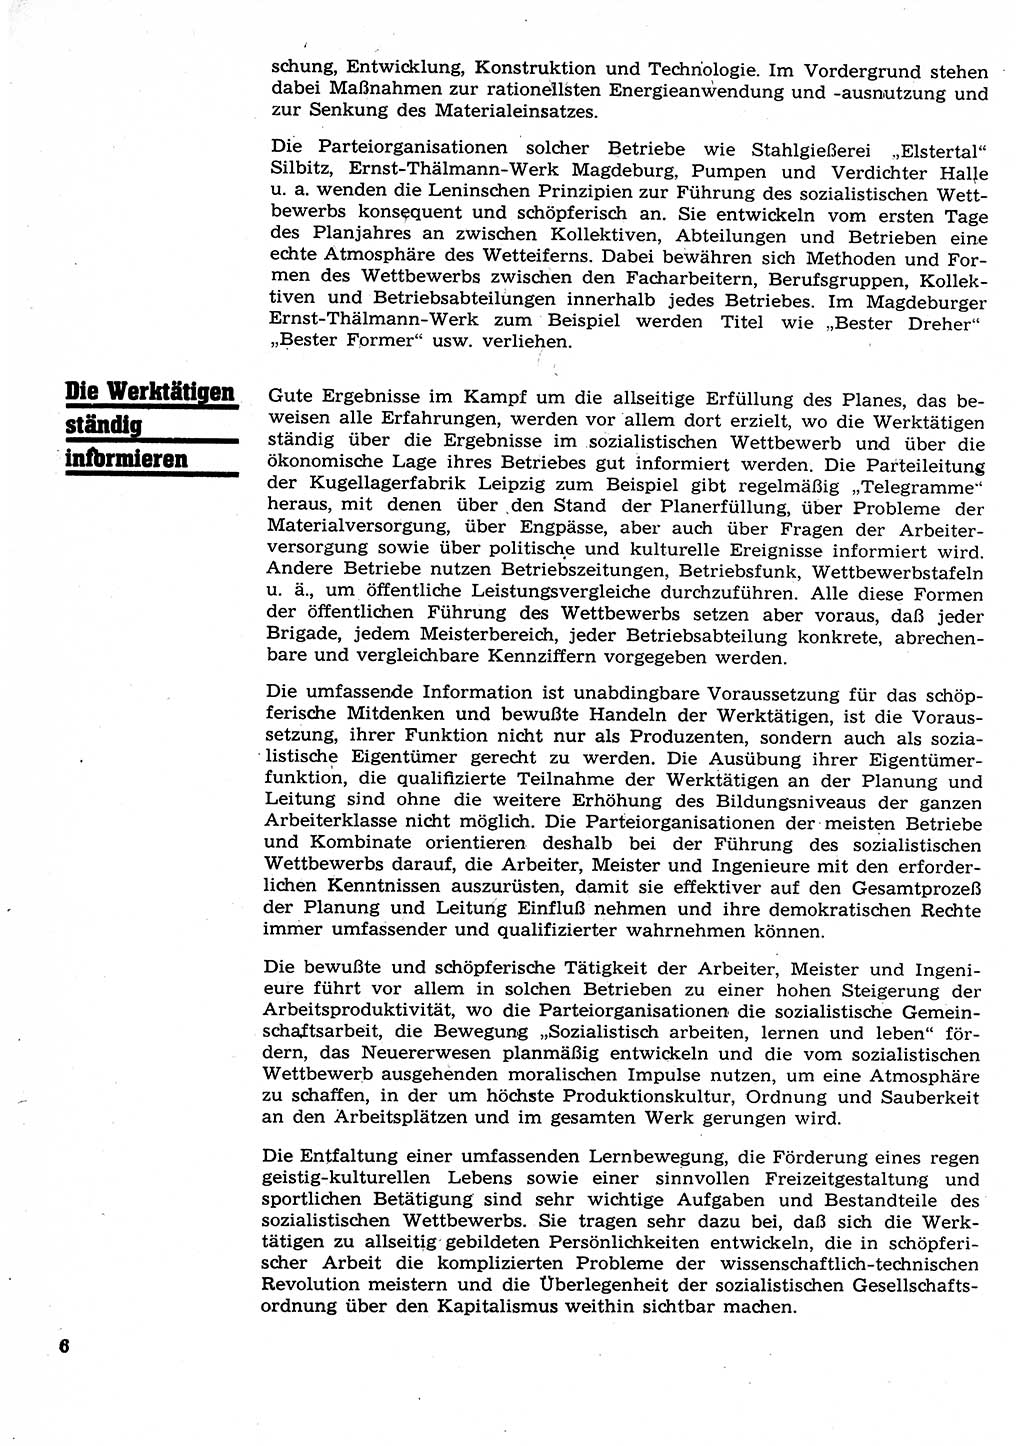 Neuer Weg (NW), Organ des Zentralkomitees (ZK) der SED (Sozialistische Einheitspartei Deutschlands) für Fragen des Parteilebens, 26. Jahrgang [Deutsche Demokratische Republik (DDR)] 1971, Seite 6 (NW ZK SED DDR 1971, S. 6)